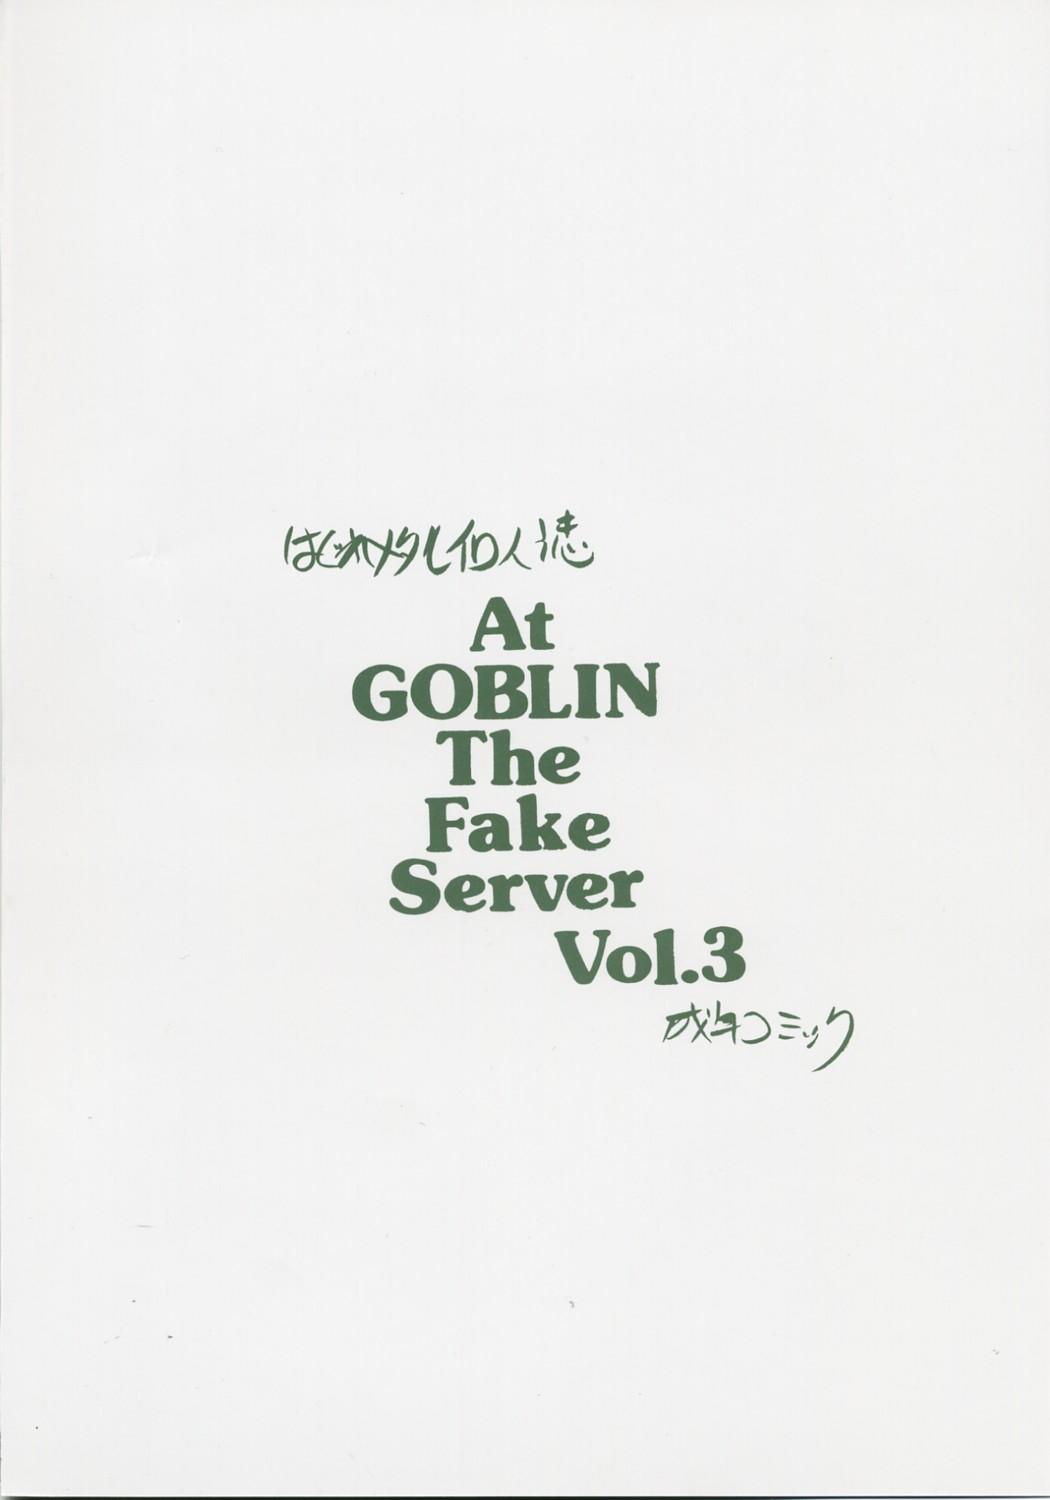 At Goblin The Fake Server Vol.3 17